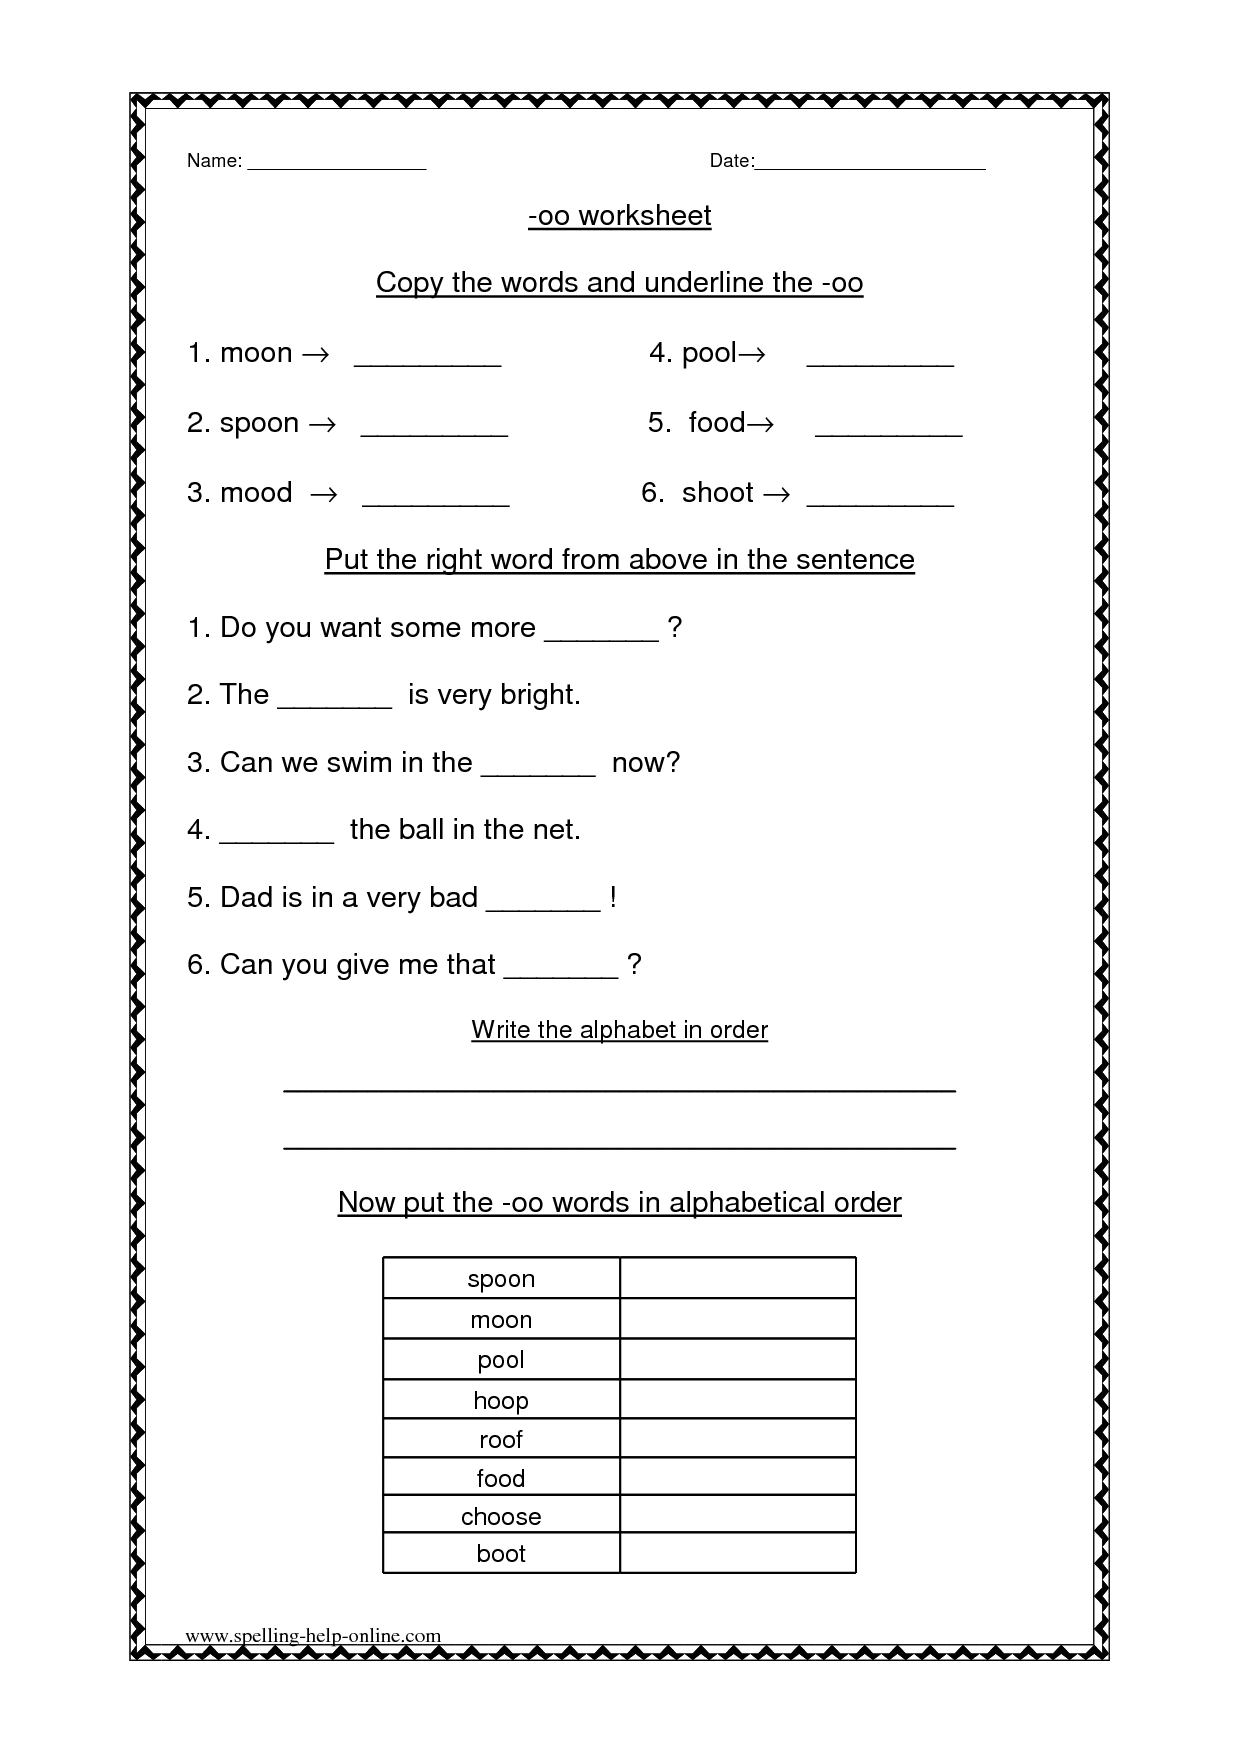 oo-worksheets-2nd-grade